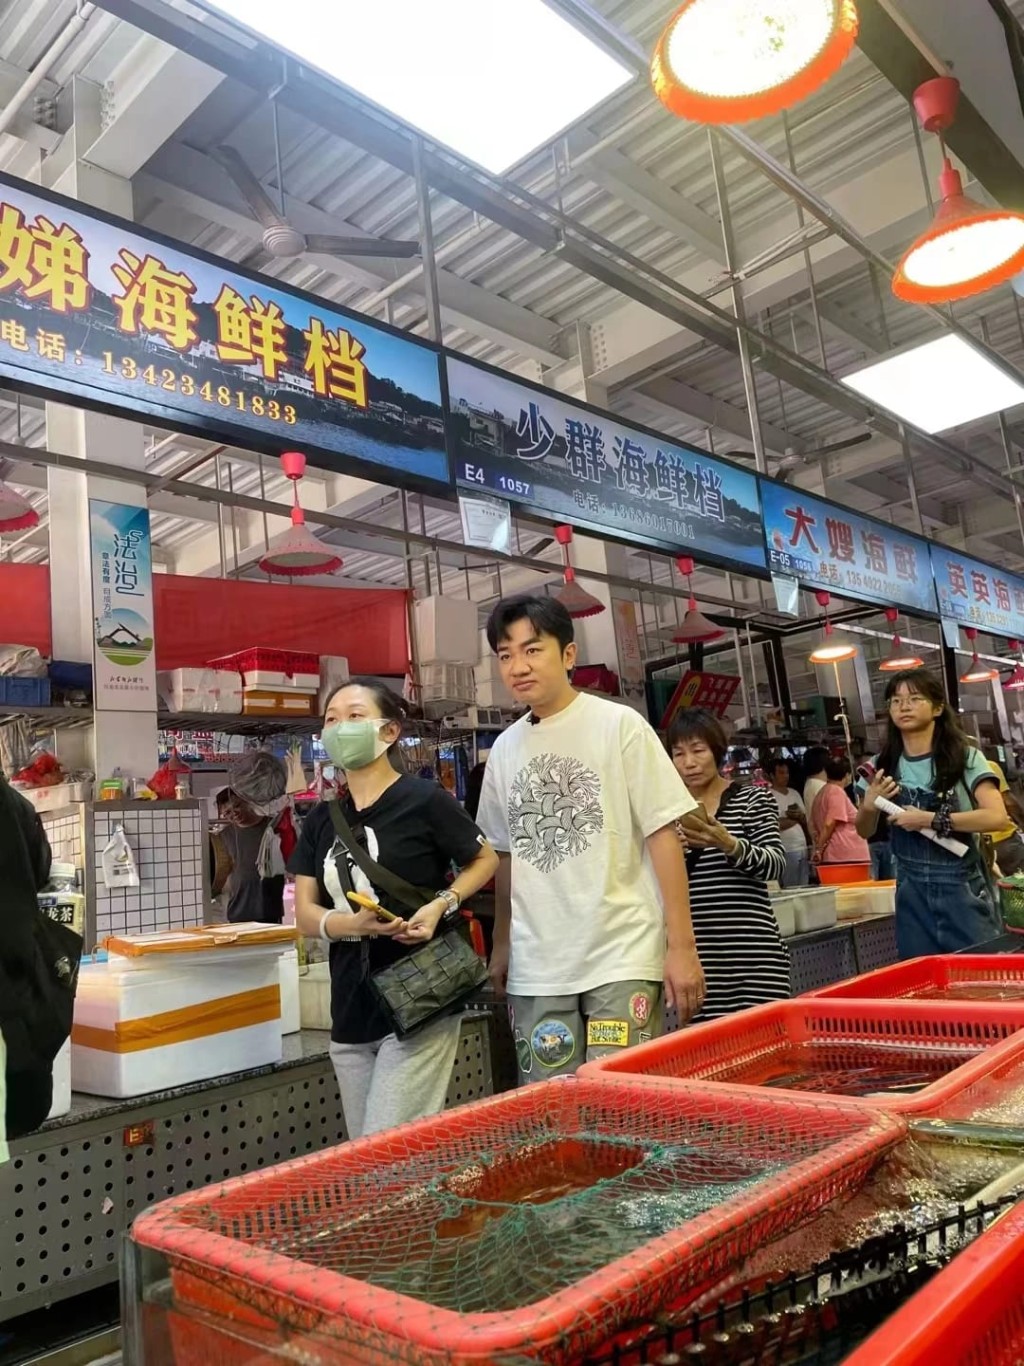 有现场网民爆料王祖蓝来东莞拍摄是为宣传虎门海鲜。